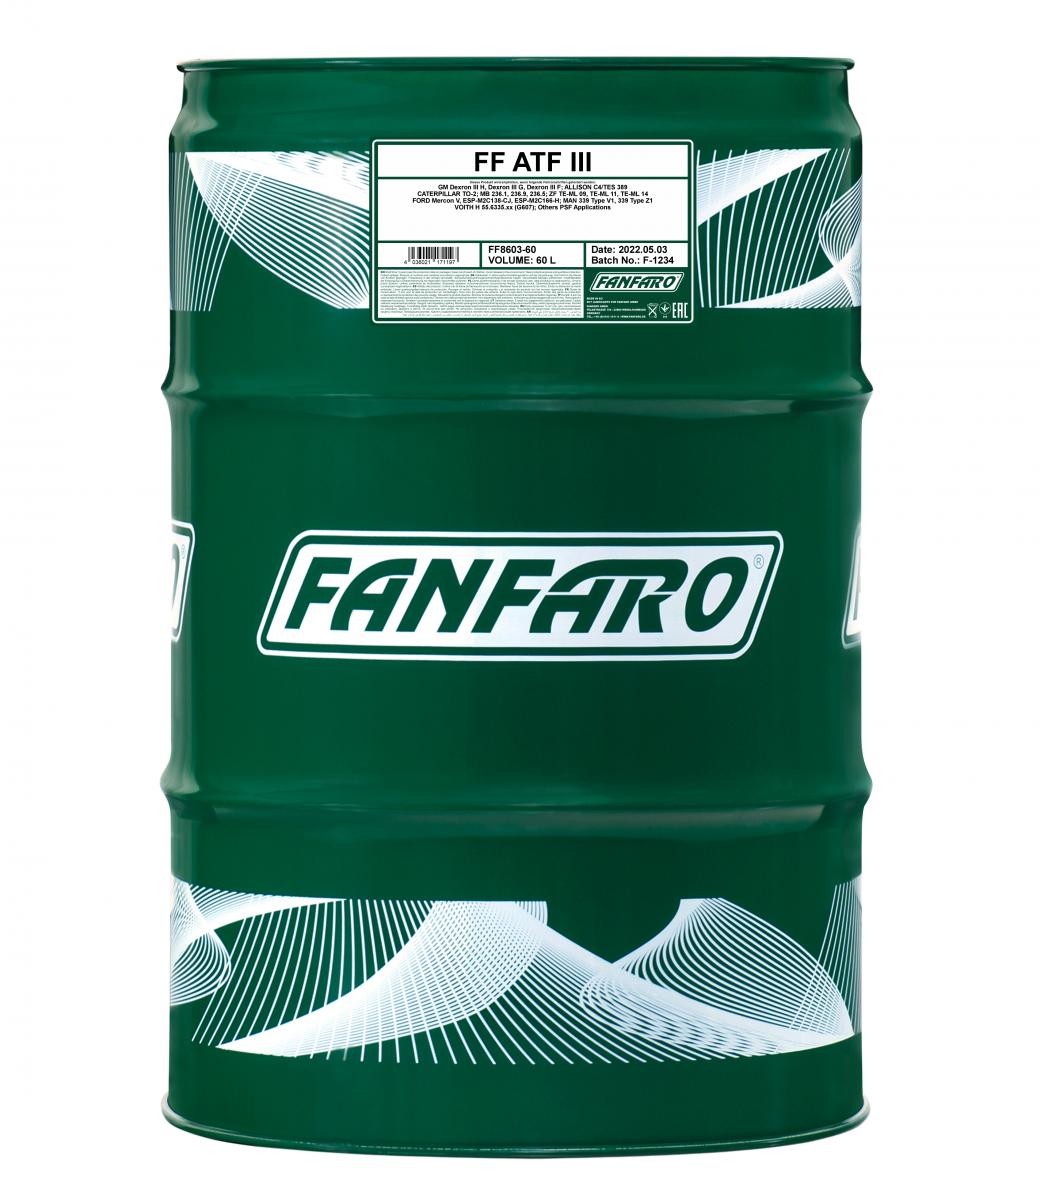 FF8603-60 FANFARO Automatikgetriebeöl IVECO EuroCargo I-III